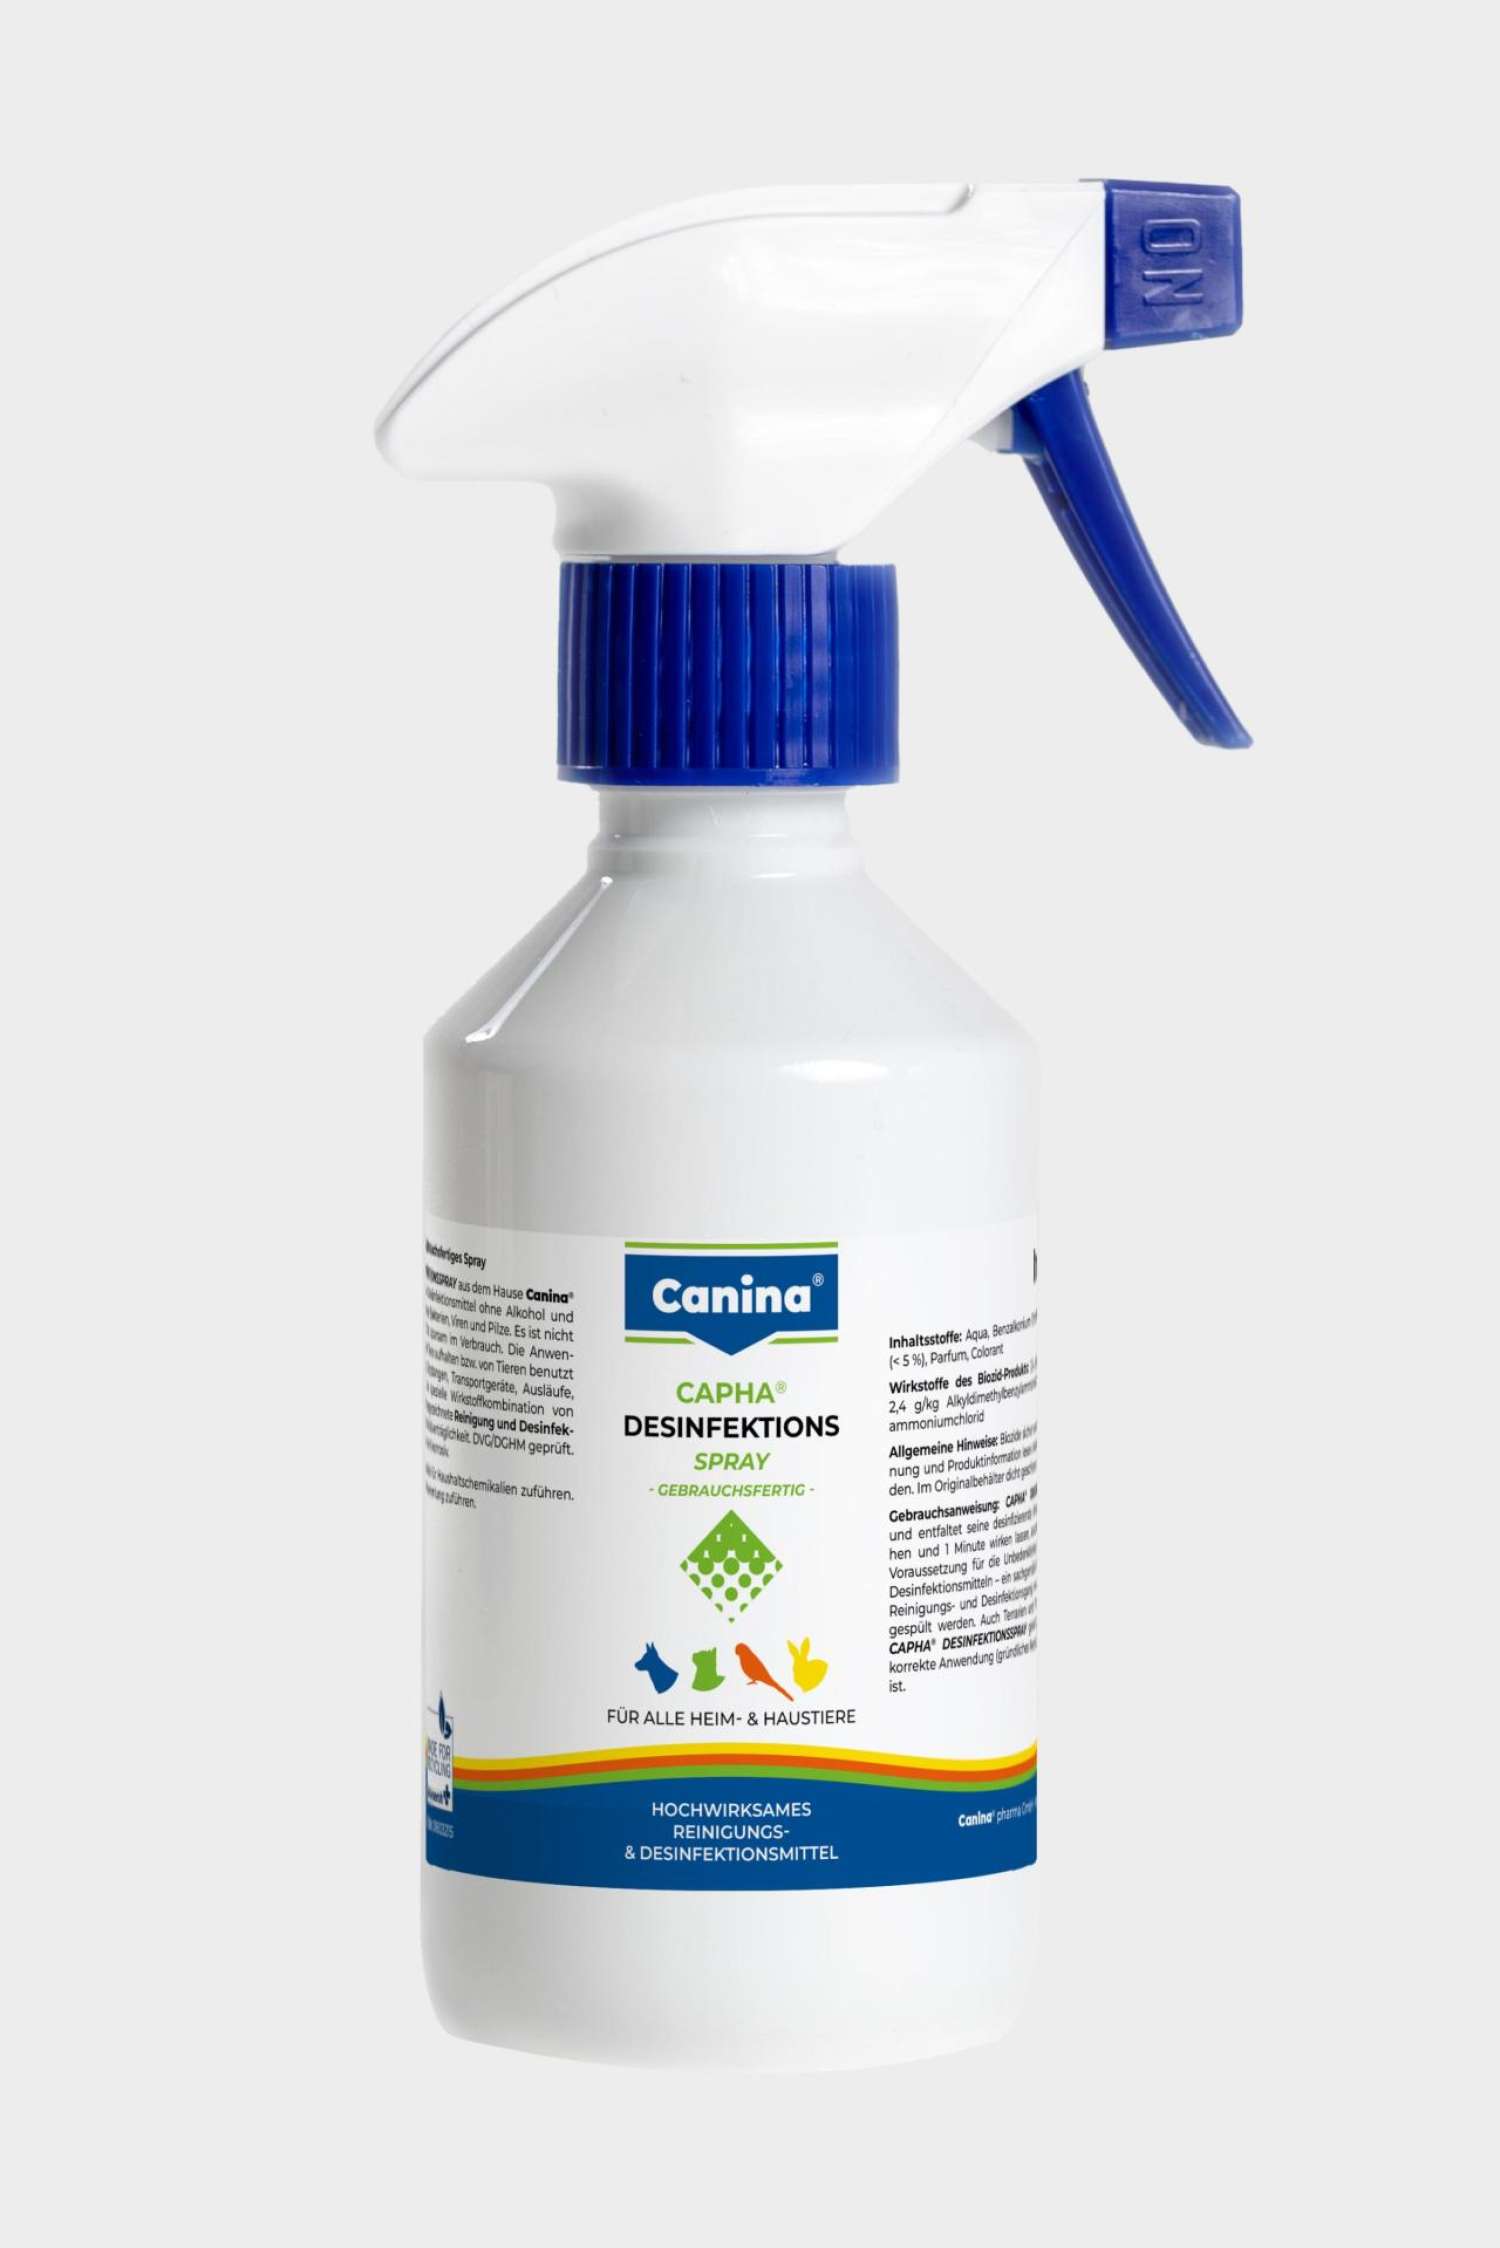 CAPHA Disinfectant spray